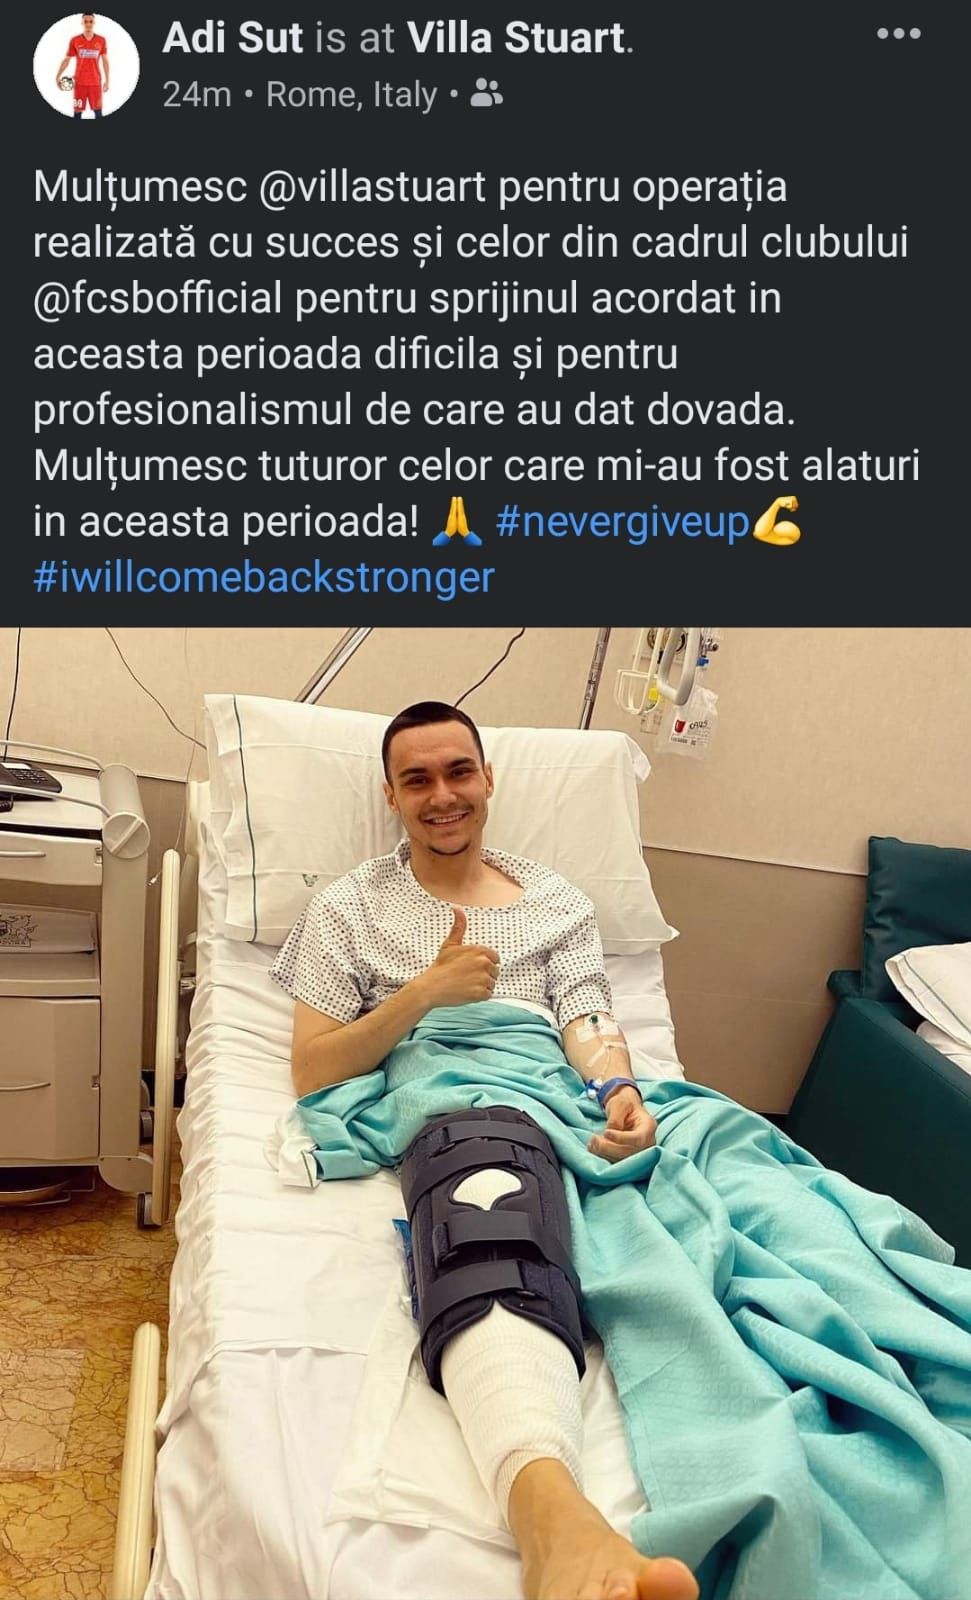 Ultimele detalii despre starea lui Adrian Sut! Fotbalistul a fost operat astazi in Italia_1